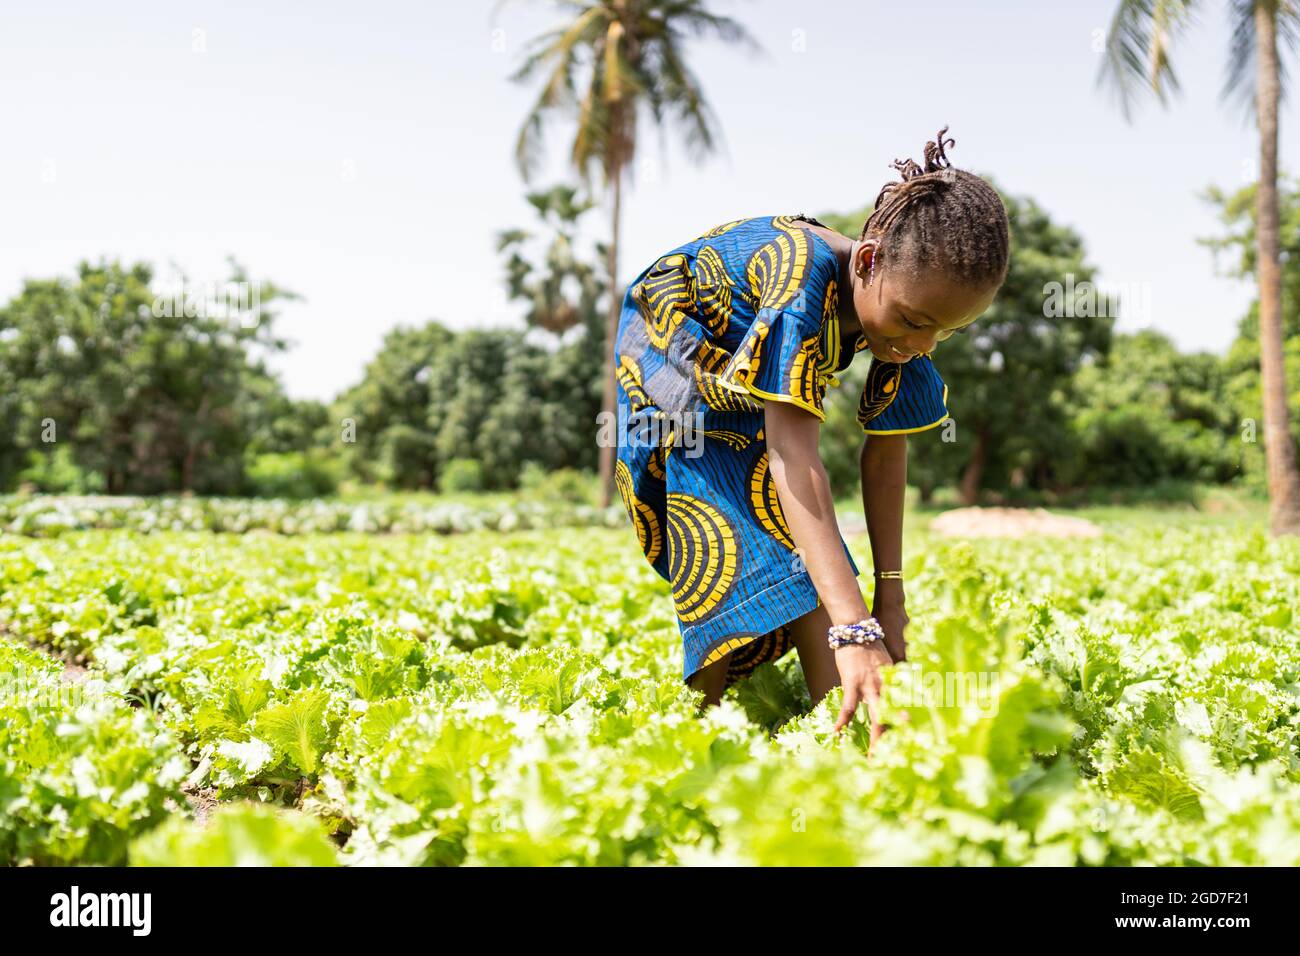 In diesem Bild erntet ein kleines schwarzes Mädchen in einer großen Plantage in Westafrika Salatblätter unter der sengenden Sonne; Kinderarbeit-Konzept Stockfoto